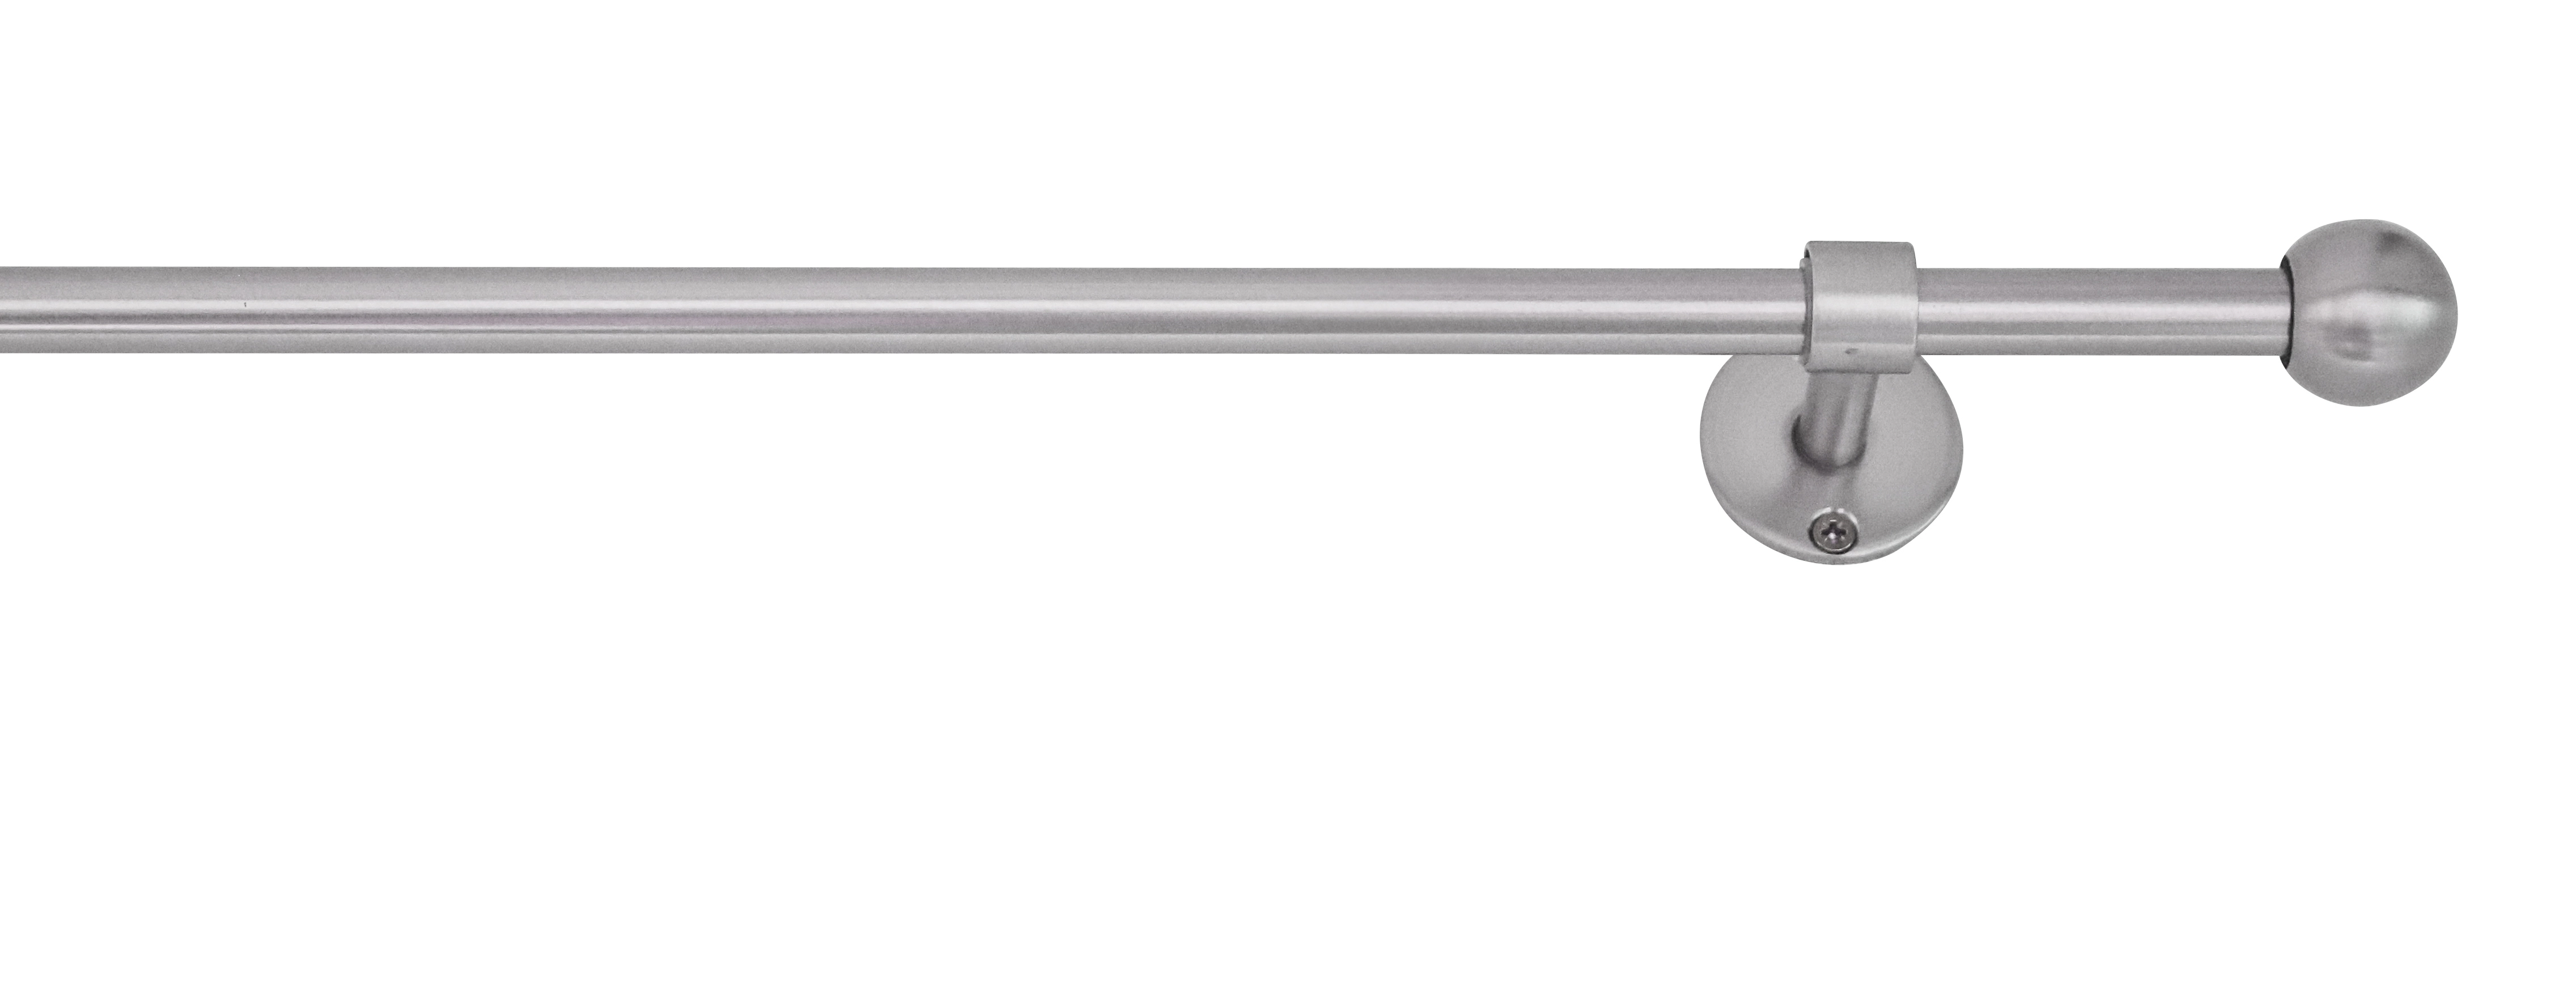 Gardinenstange-Komplettset bei 2in1 mydeco ausziehbar 160-280cm Edelstahl-Optik OBI kaufen